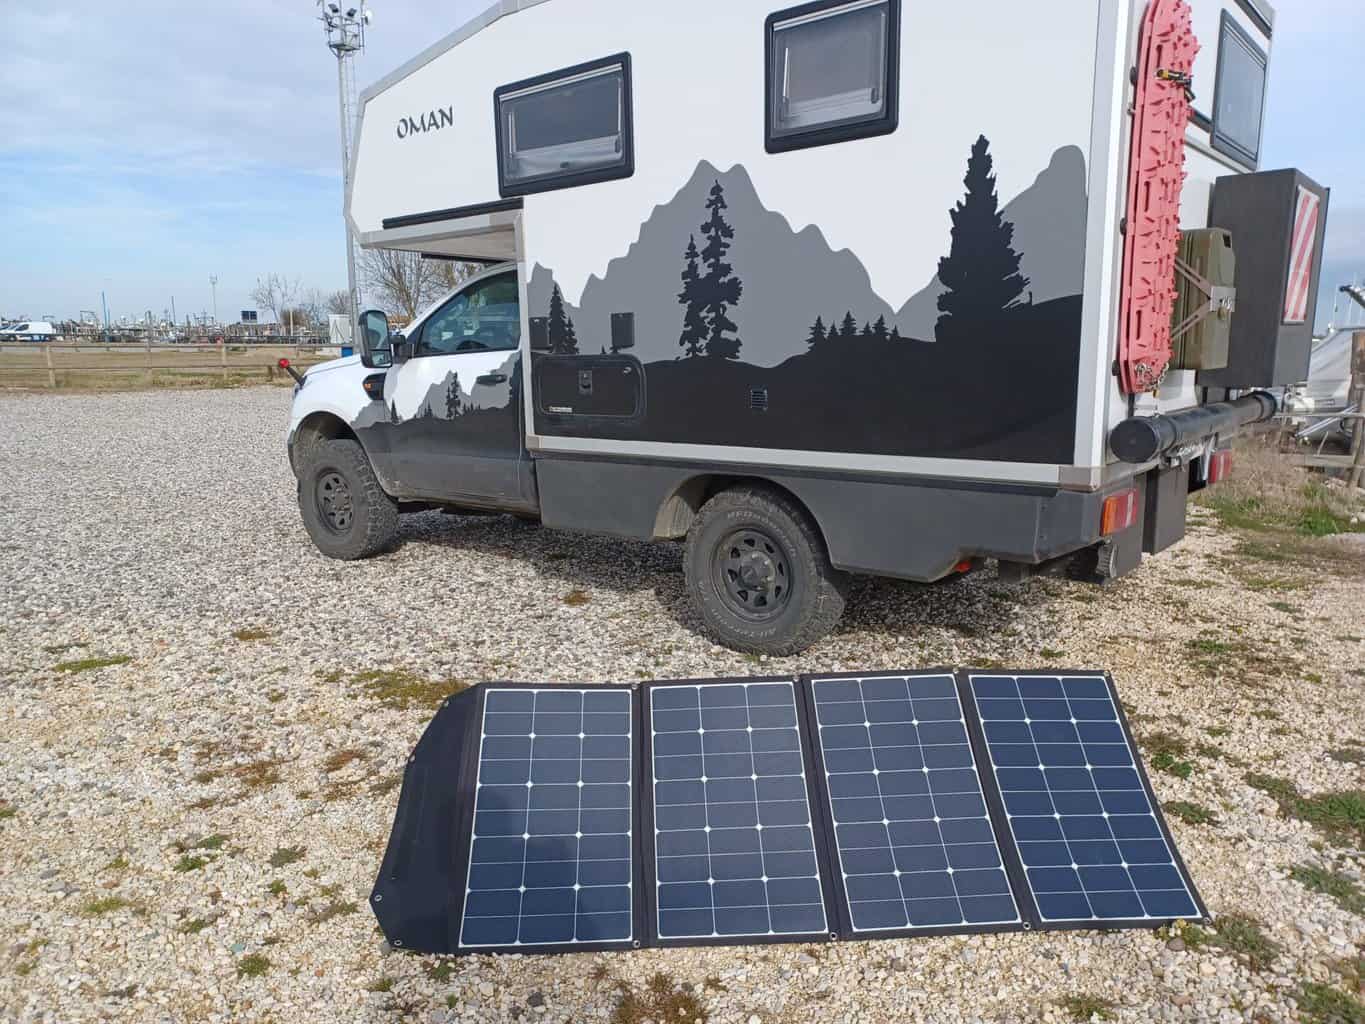 Kriterien für eine festinstallierte oder mobile Solaranlage auf dem Camper oder Wohnmobil, Oman Camper mobile Solaranlage